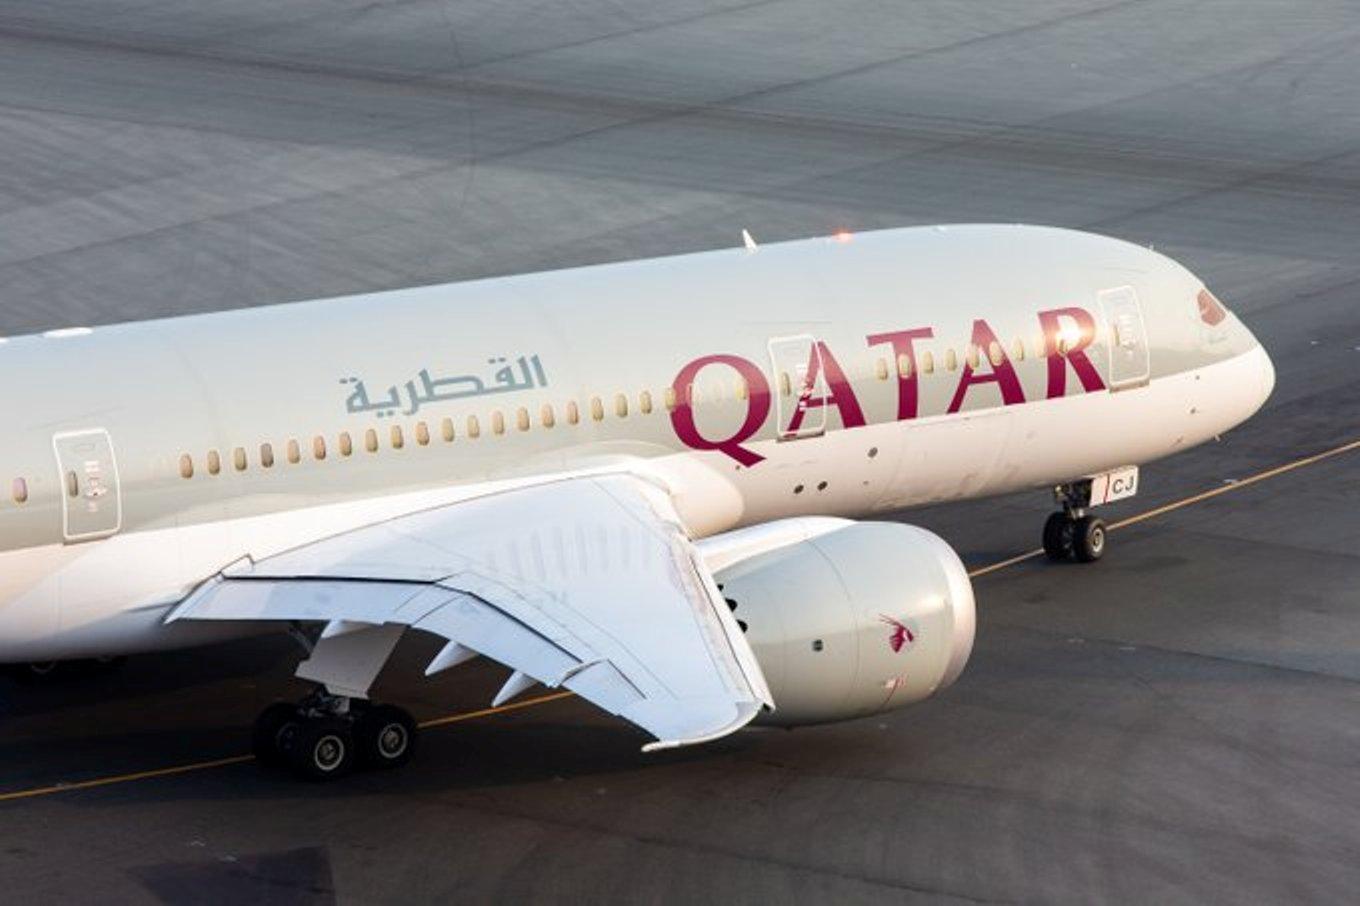 Qatar airways flight schedule